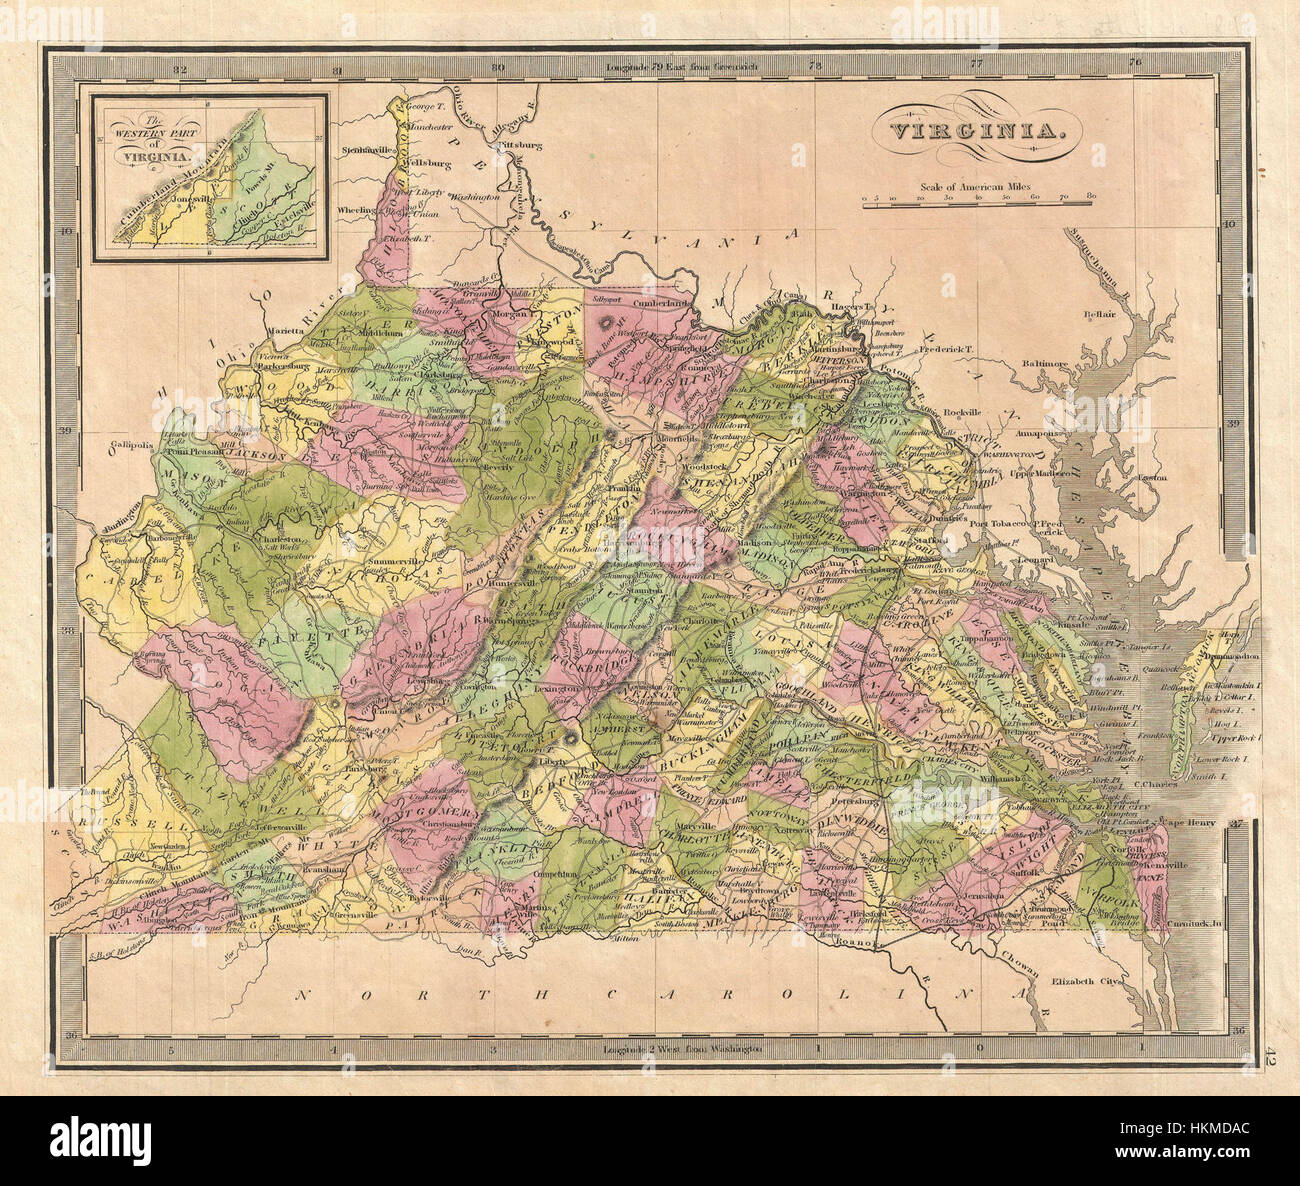 1848 Greenleaf Mapa de Virginia - Virginia - Geographicus greenleaf-1848 Foto de stock